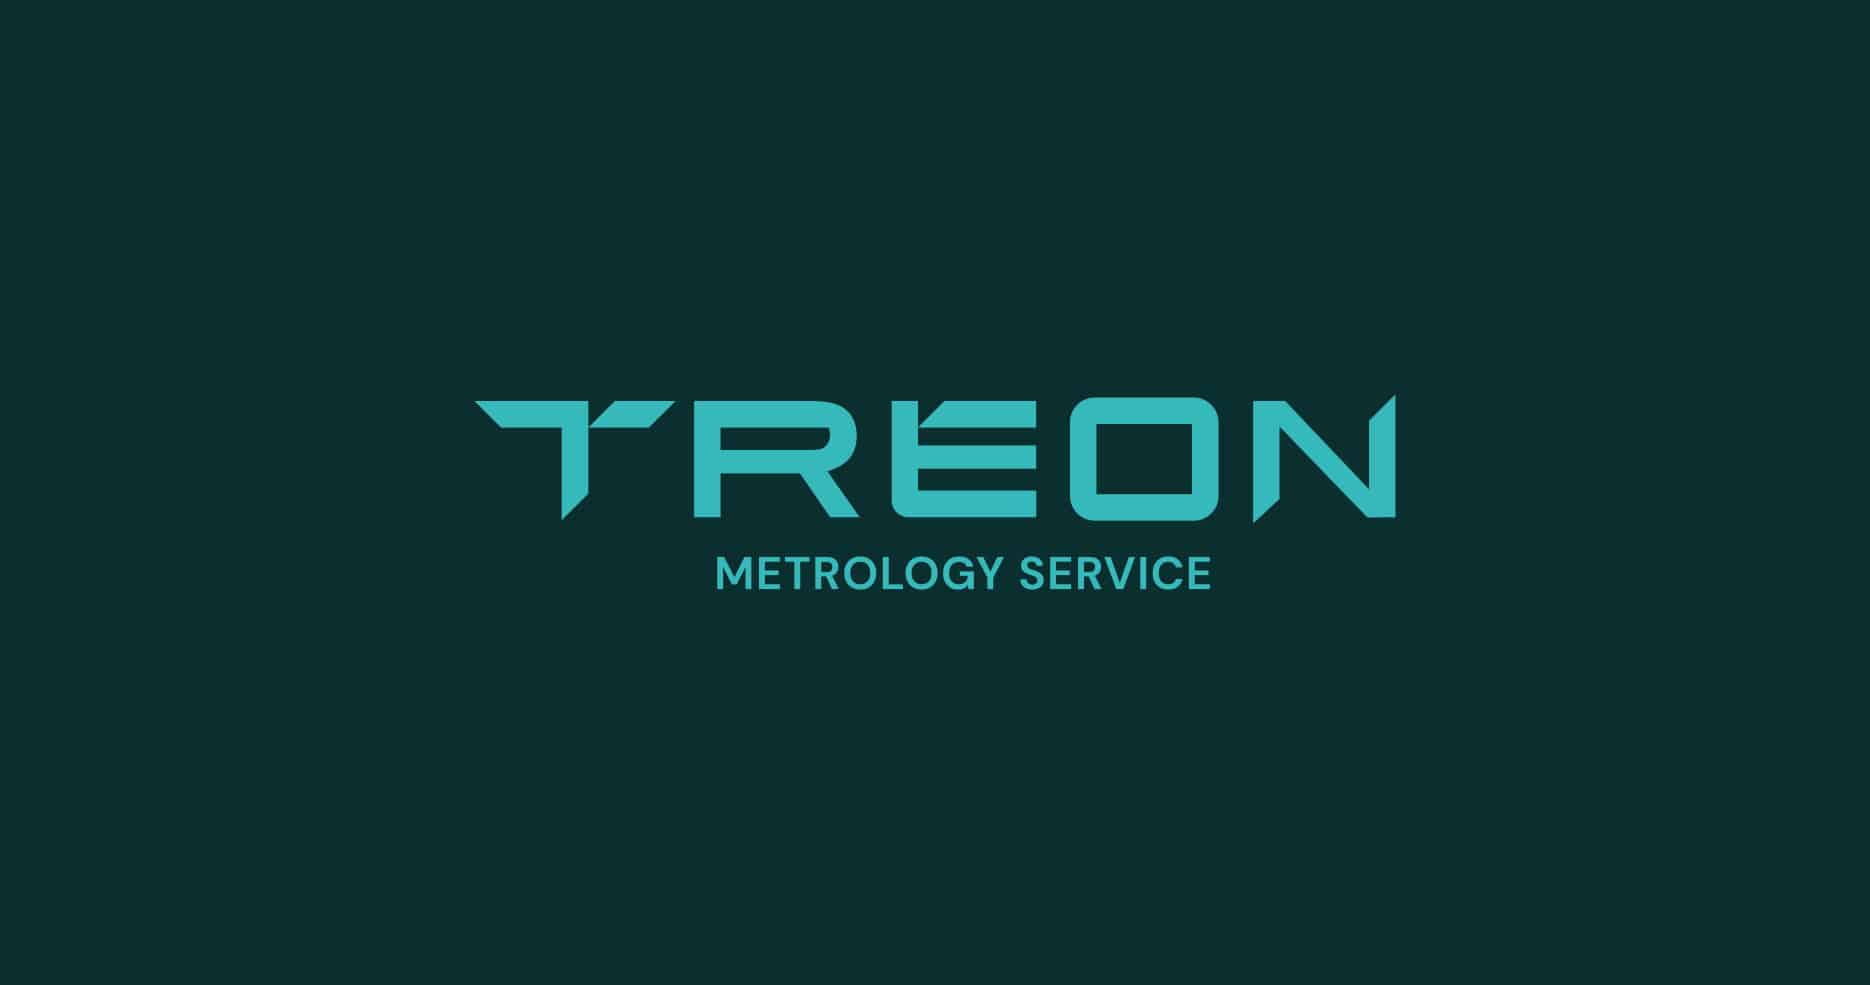 nowe logo TREON metrology service identyfikacja wizualna Brandglow